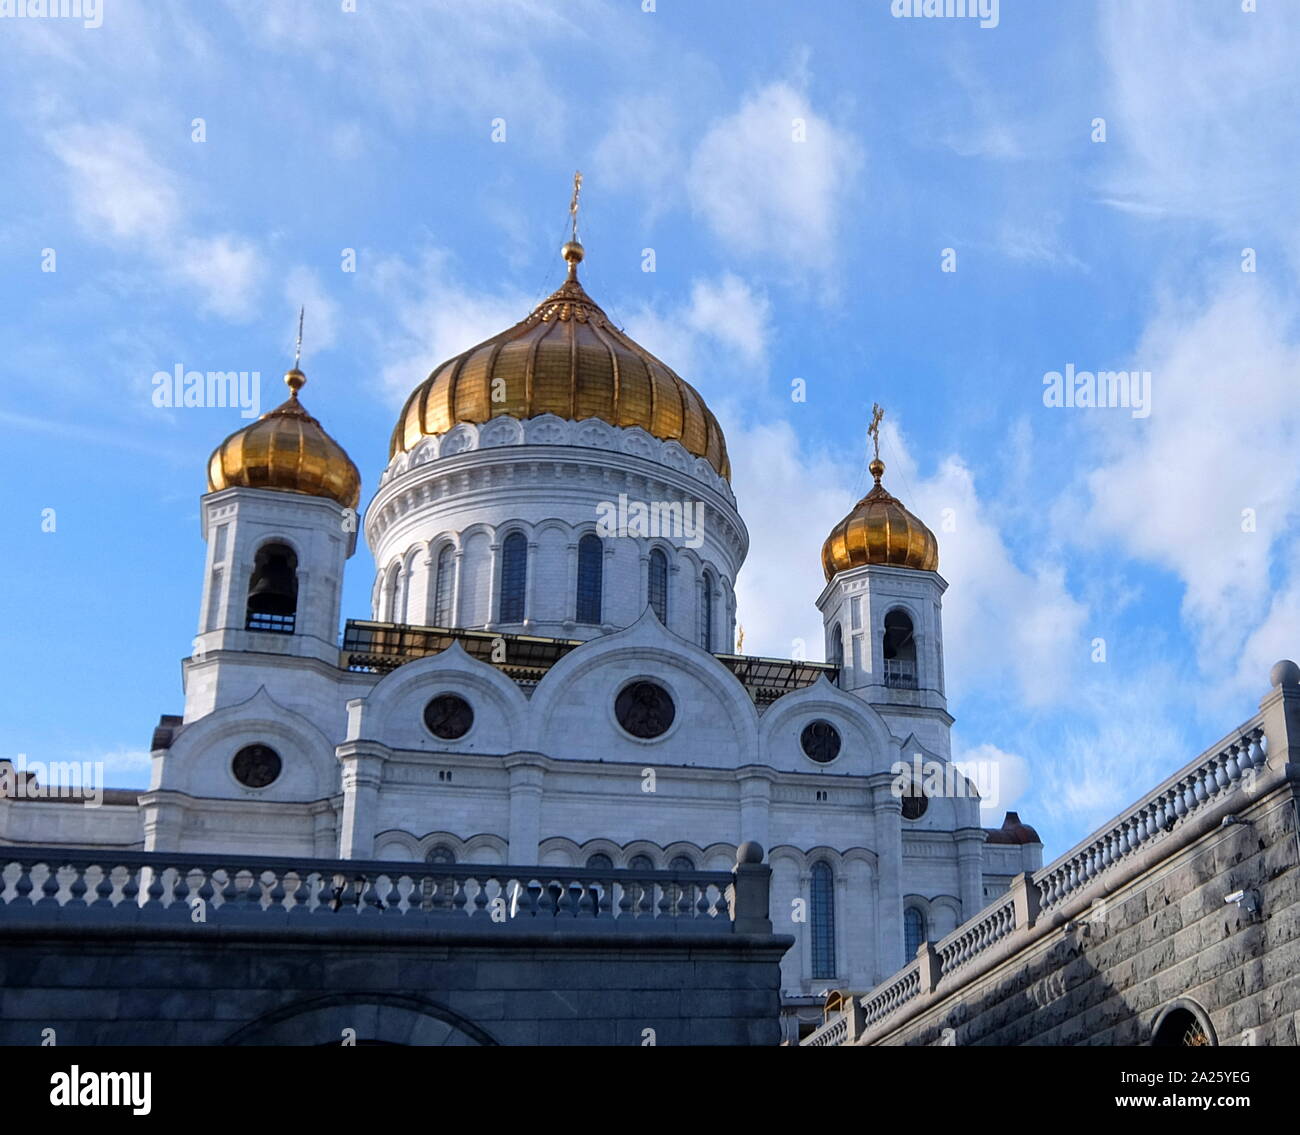 La Cathédrale de Christ le Sauveur, une cathédrale orthodoxe russe à Moscou, en Russie, sur la rive nord de la rivière Moskova. Banque D'Images